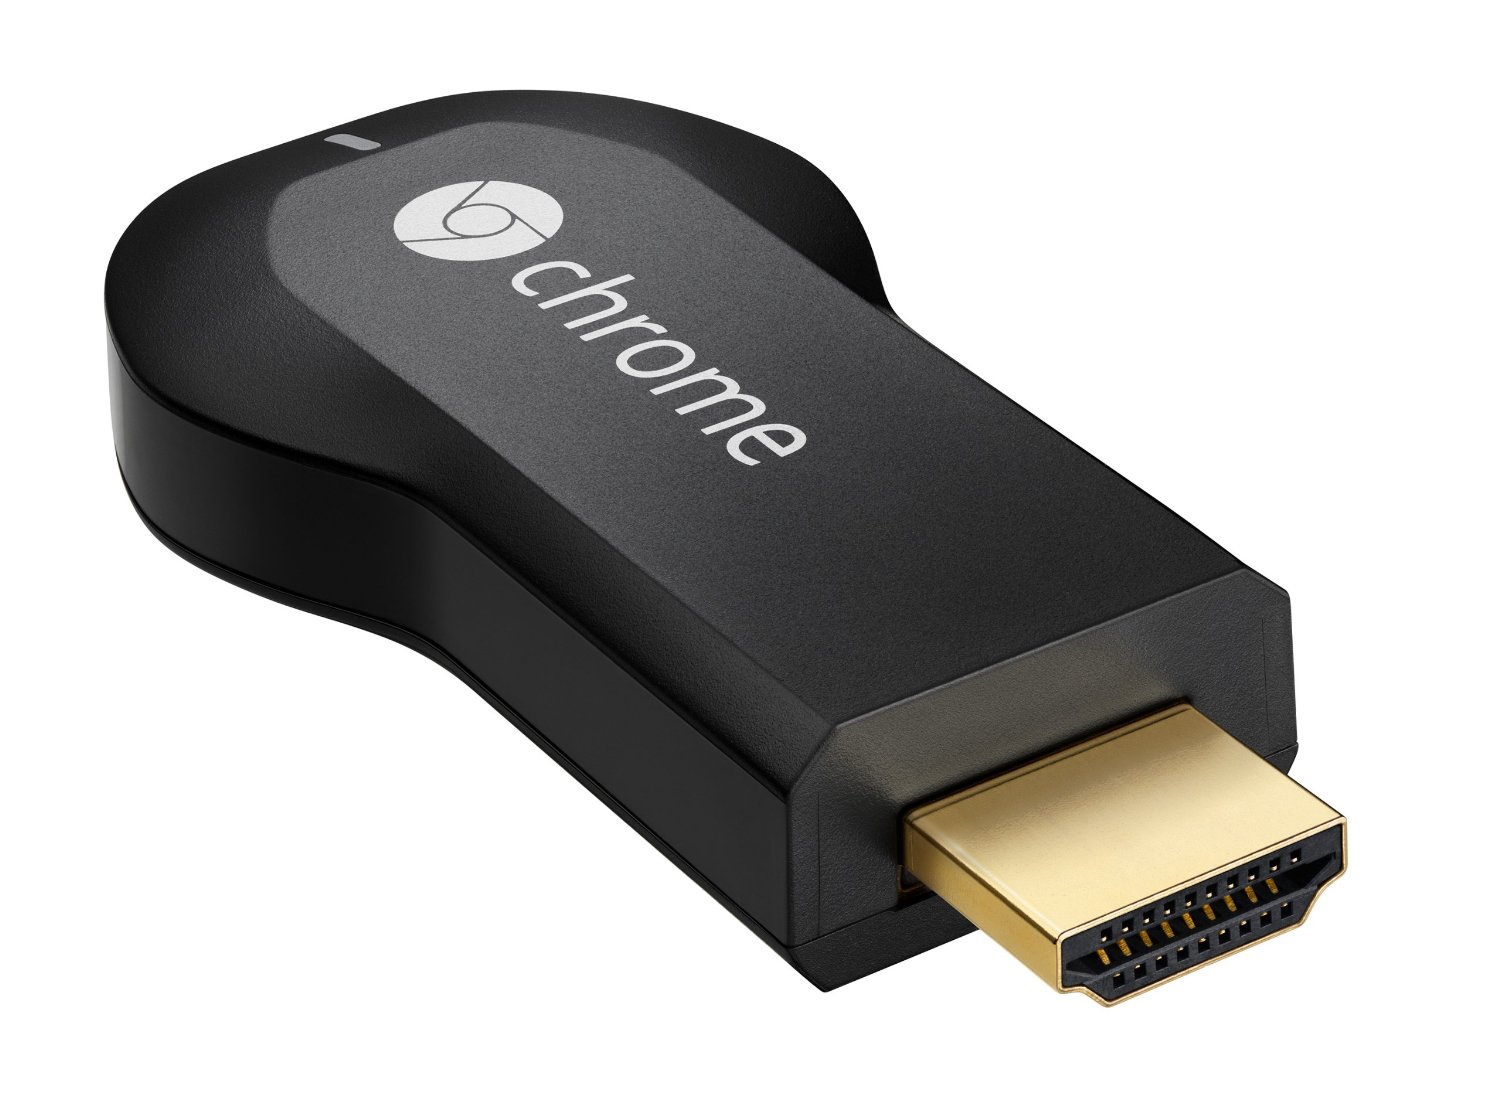 Le Chromecast est le deuxième appareil de streaming aux États-Unis